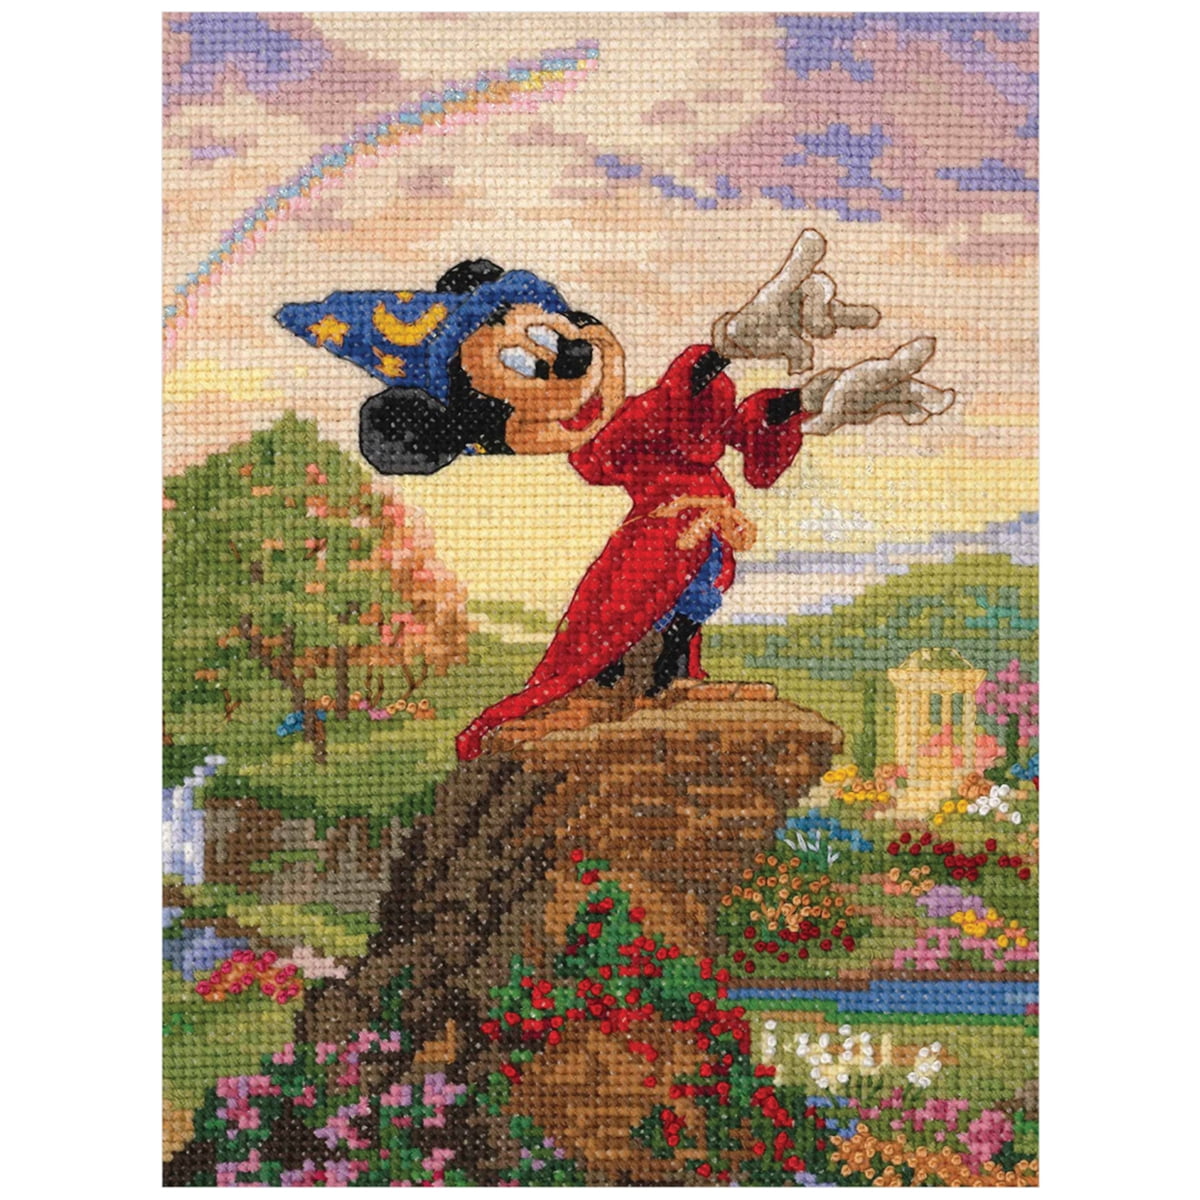 MG Textiles Kinkade Disney Dreams Collection Fantasia Cross Stitch Kit 52510